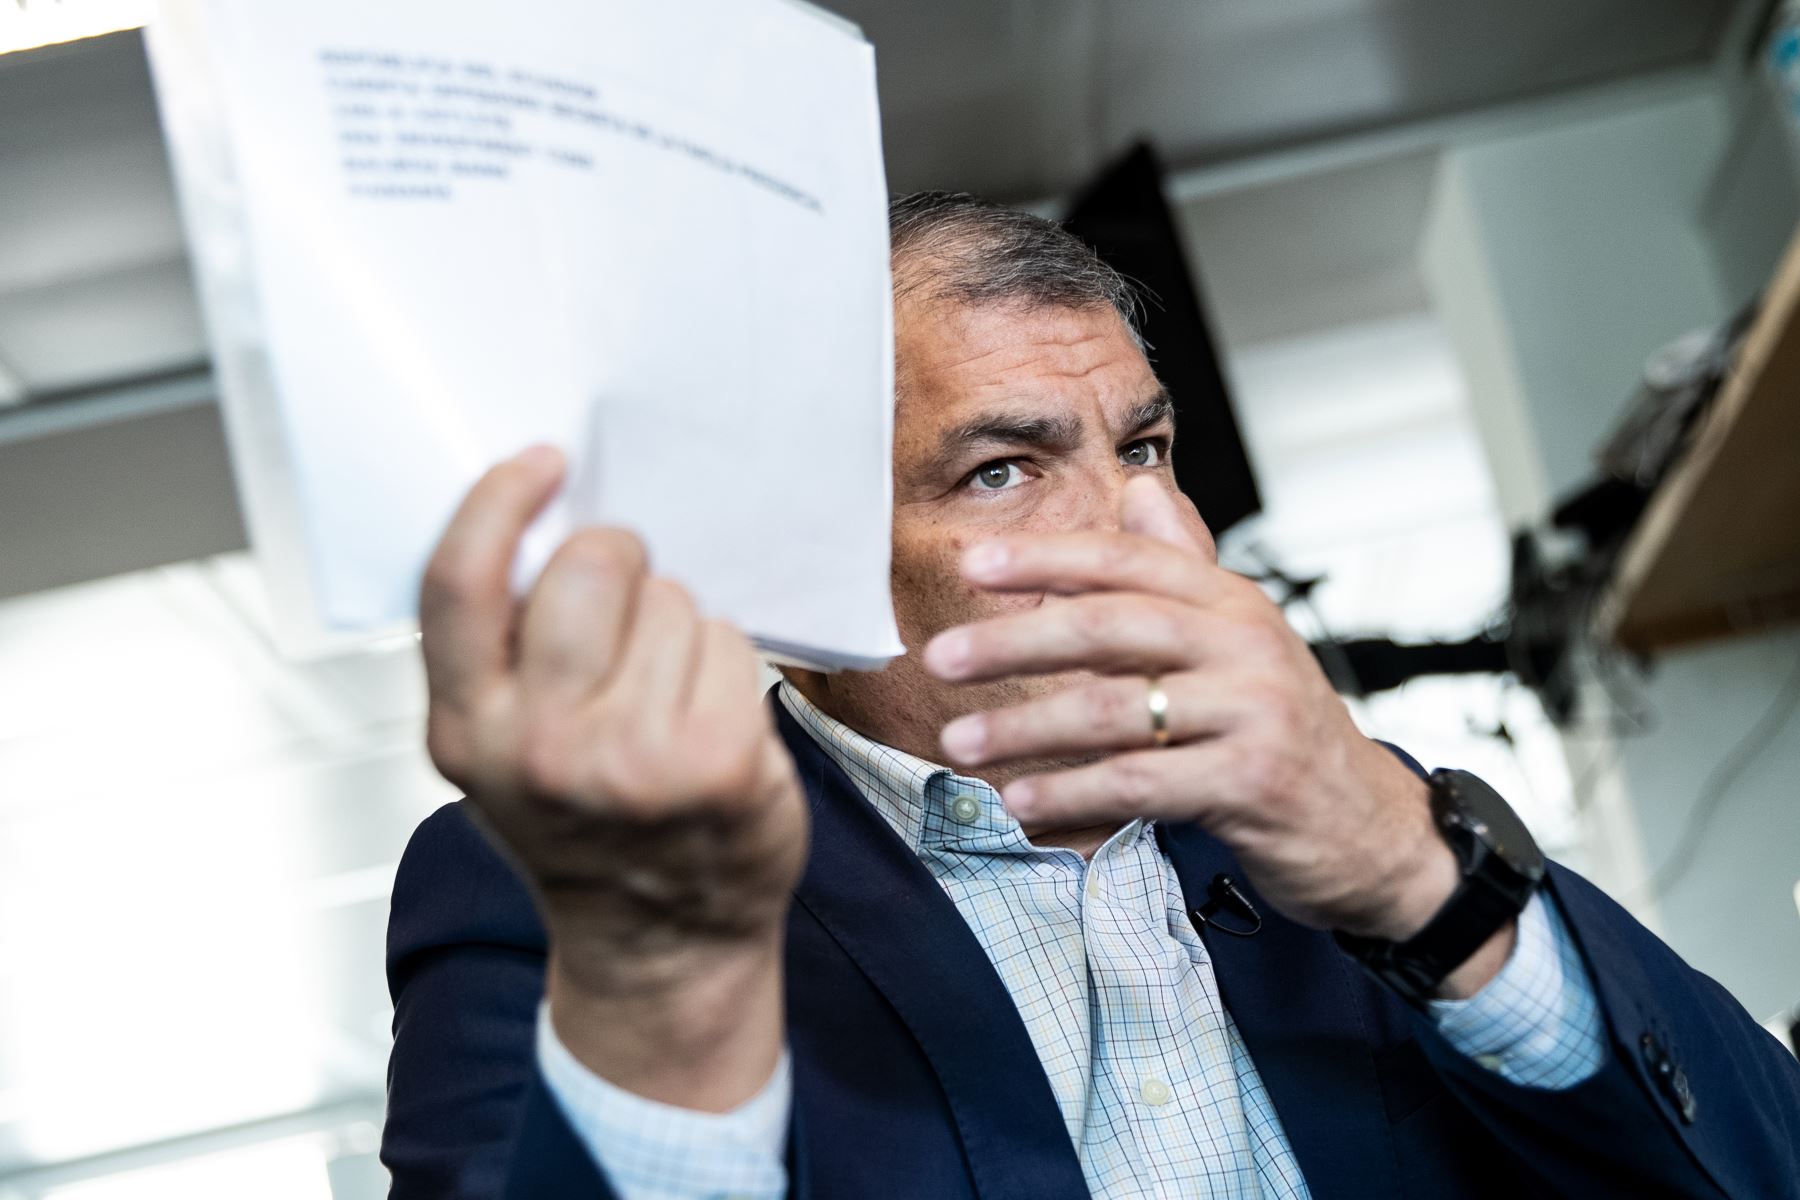 El expresidente de Ecuador (2007-2017) Rafael Correa hace gestos durante una entrevista con la Agence France-Presse (AFP) en Bruselas el 11 de abril de 2019. Foto: AFP